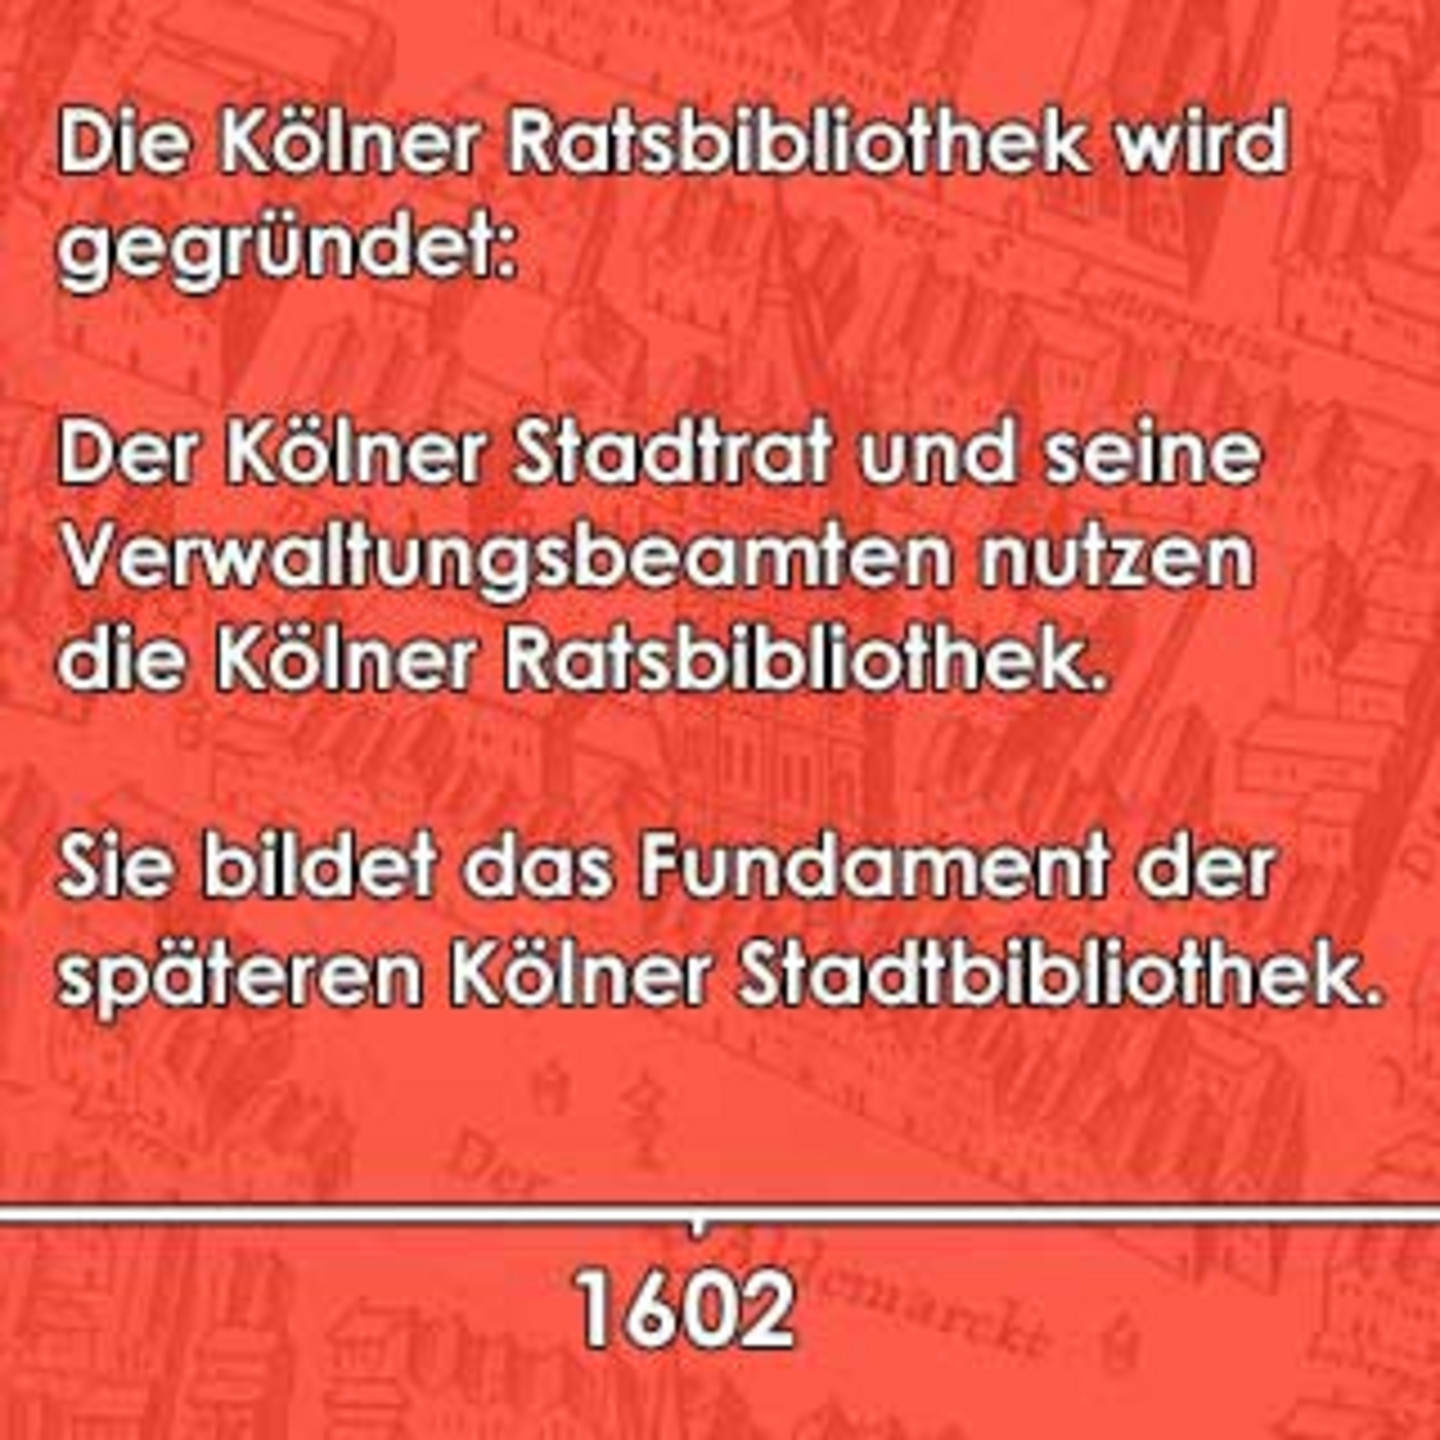 Ein rotes Bild auf dem beschrieben ist, dass der Kölner Stadtrat und seine Verwaltungsbeamten das Fundament der späteren Kölner Stadtbibliothek bilden.